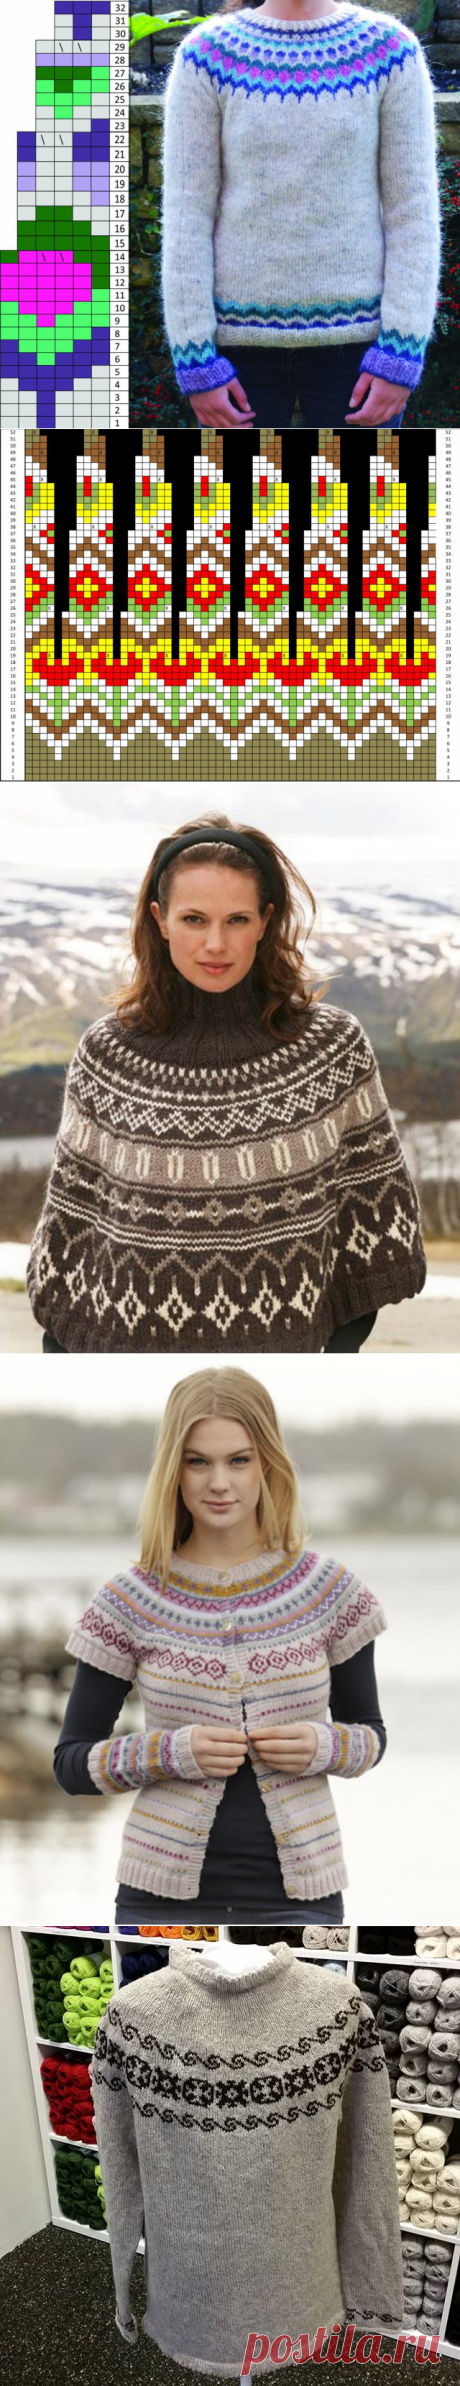 Лопапейса: схемы вязания ирландского свитера, фото и интересные идеи